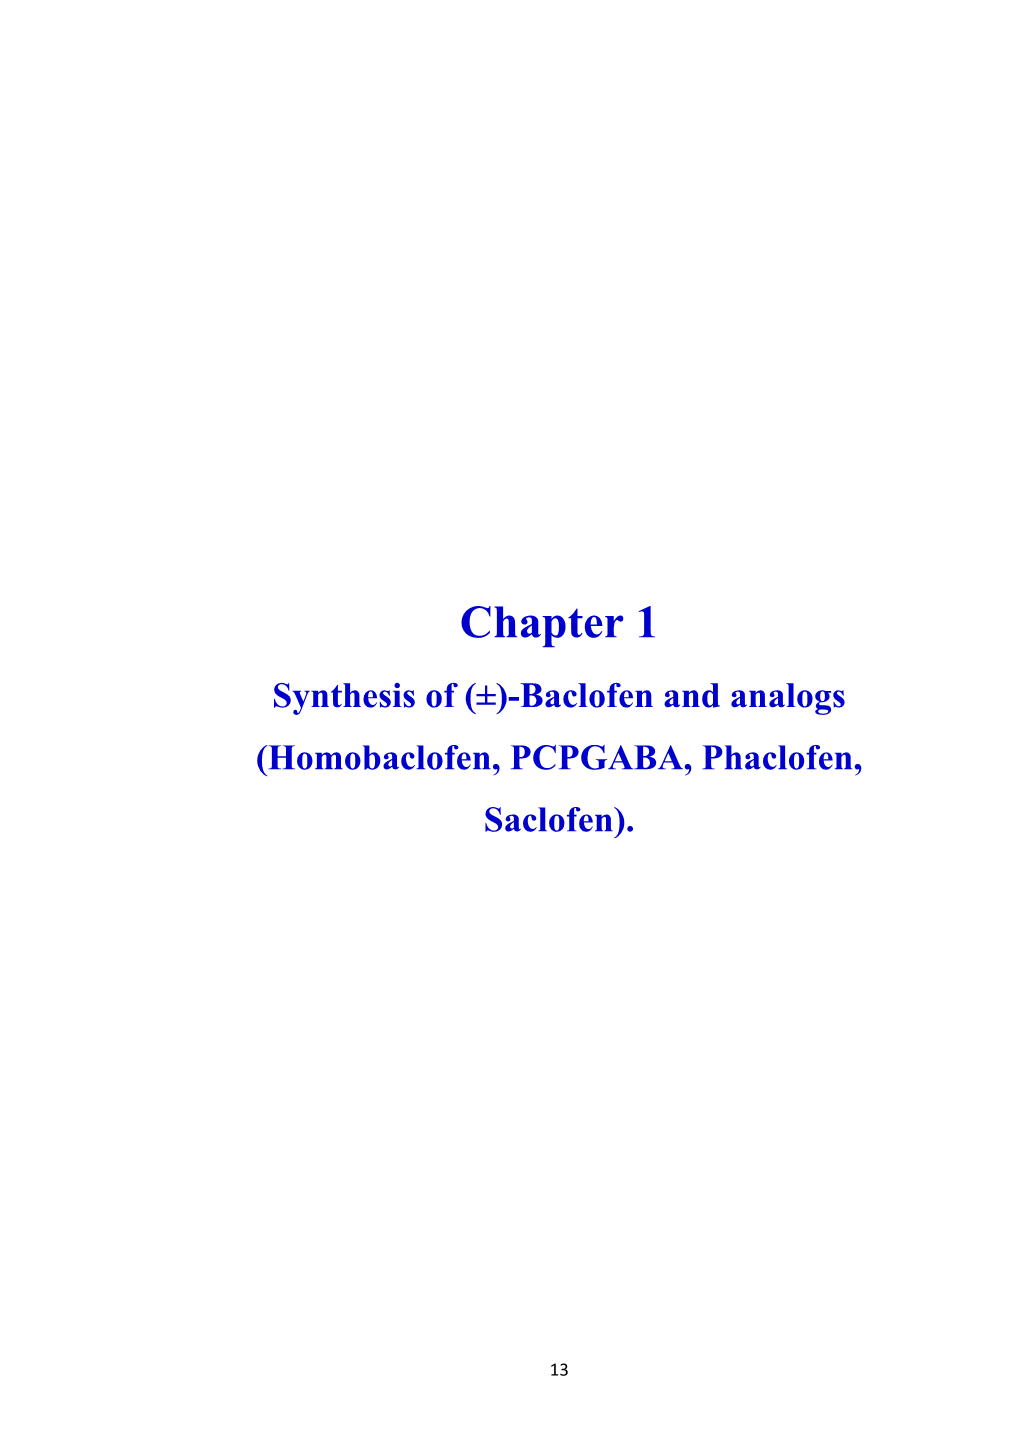 Chapter 1 Synthesis of (±)-Baclofen and Analogs (Homobaclofen, PCPGABA, Phaclofen, Saclofen)